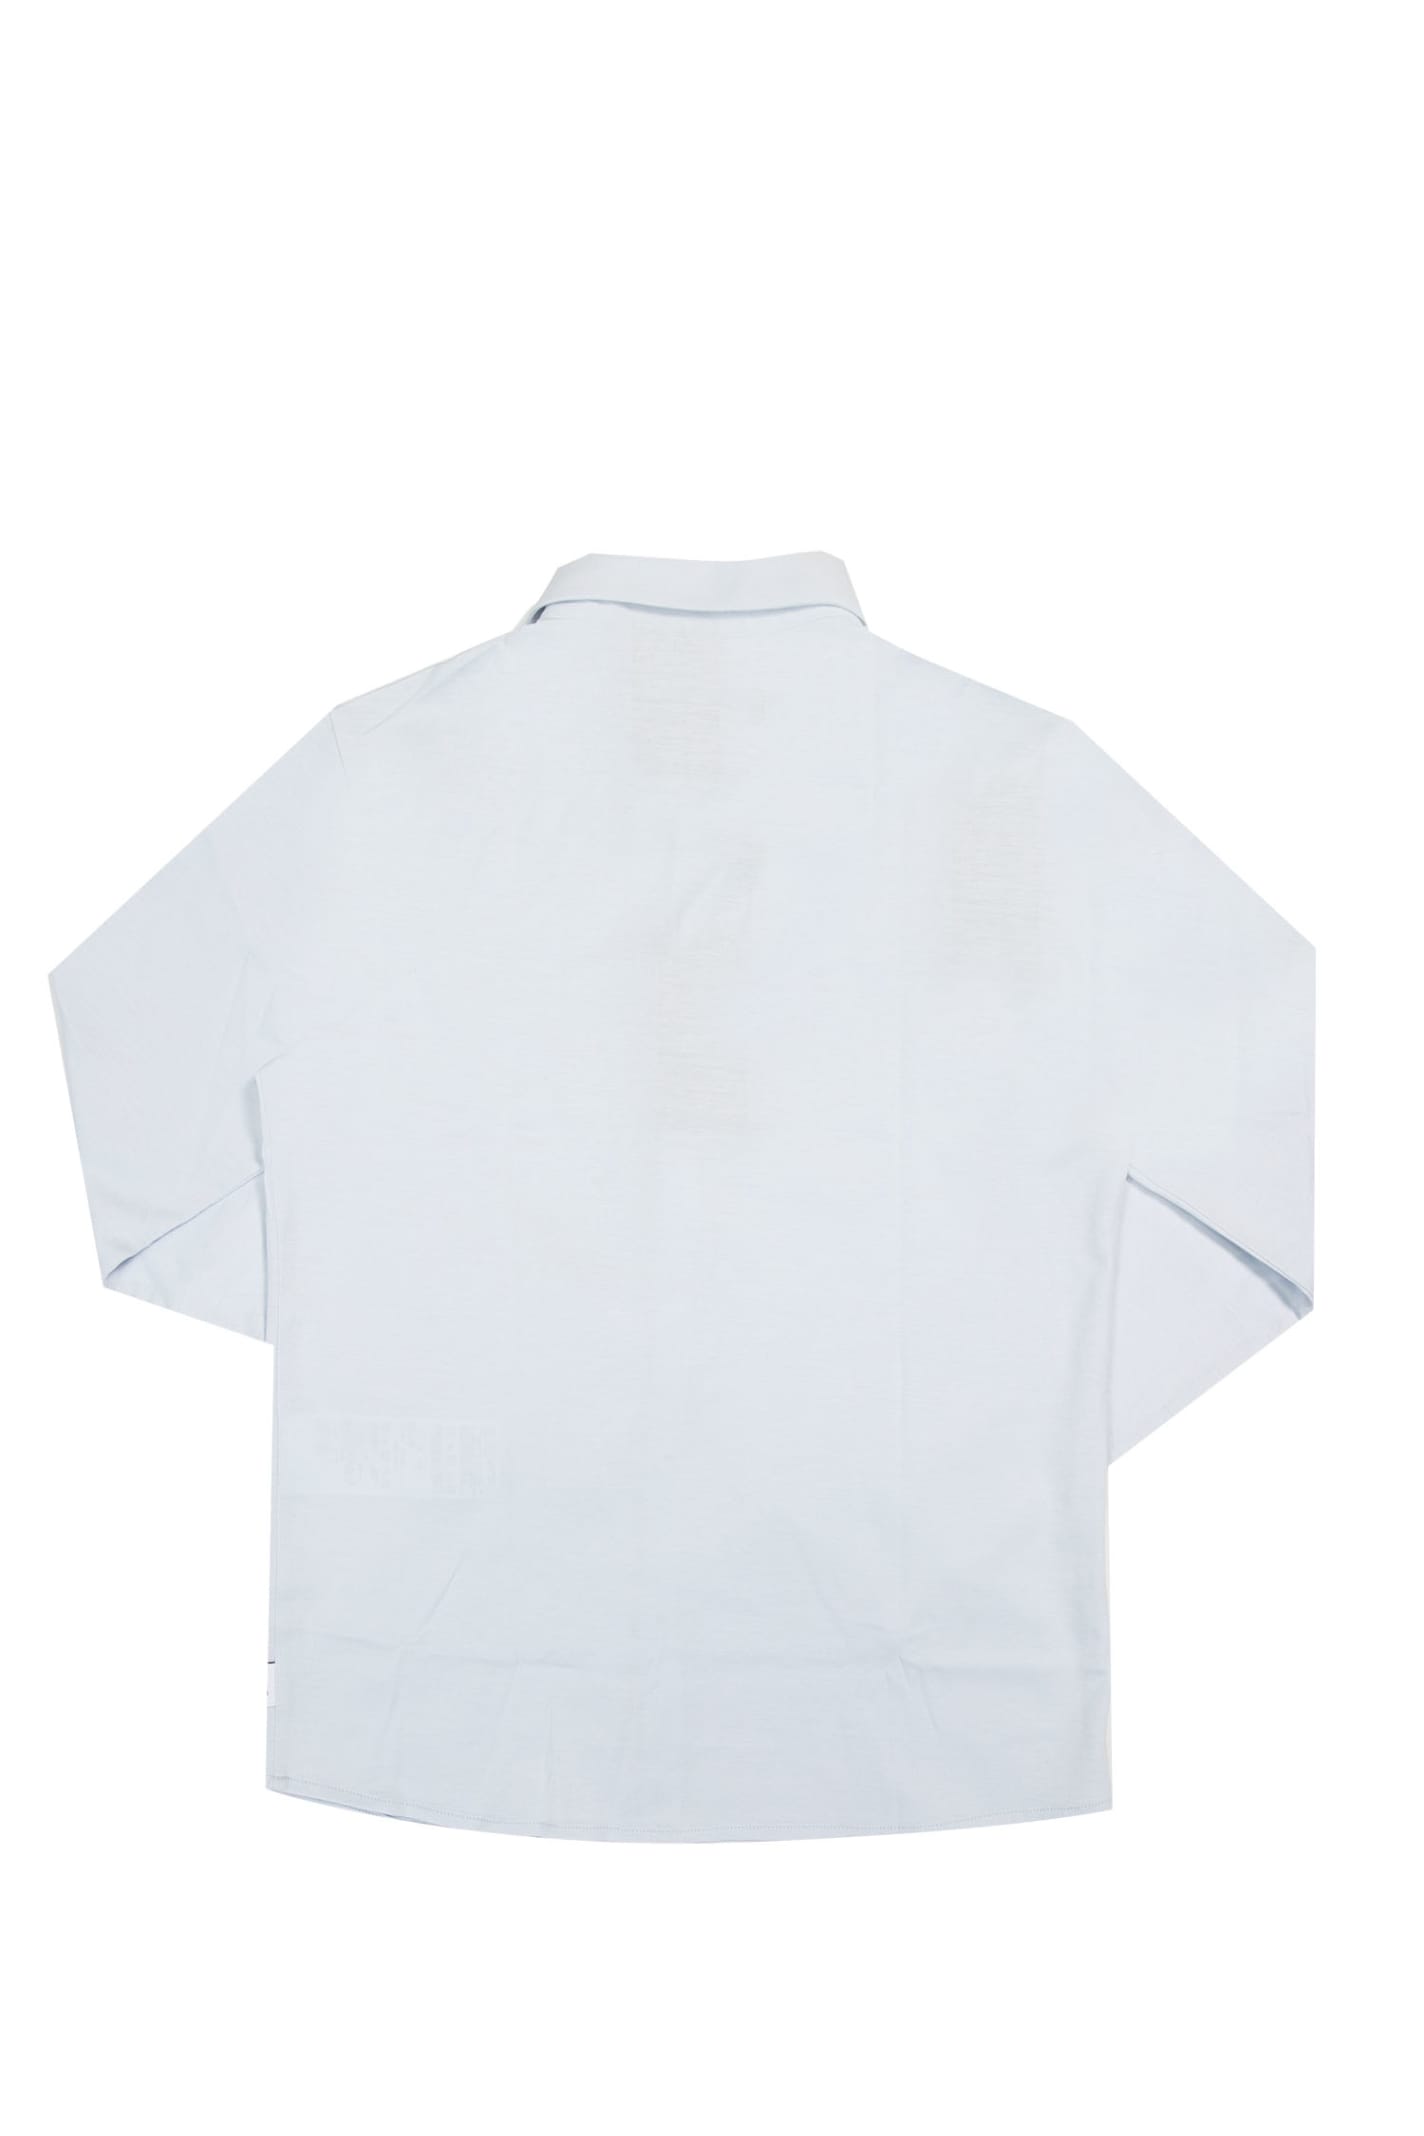 Shop Emporio Armani Cotton Shirt